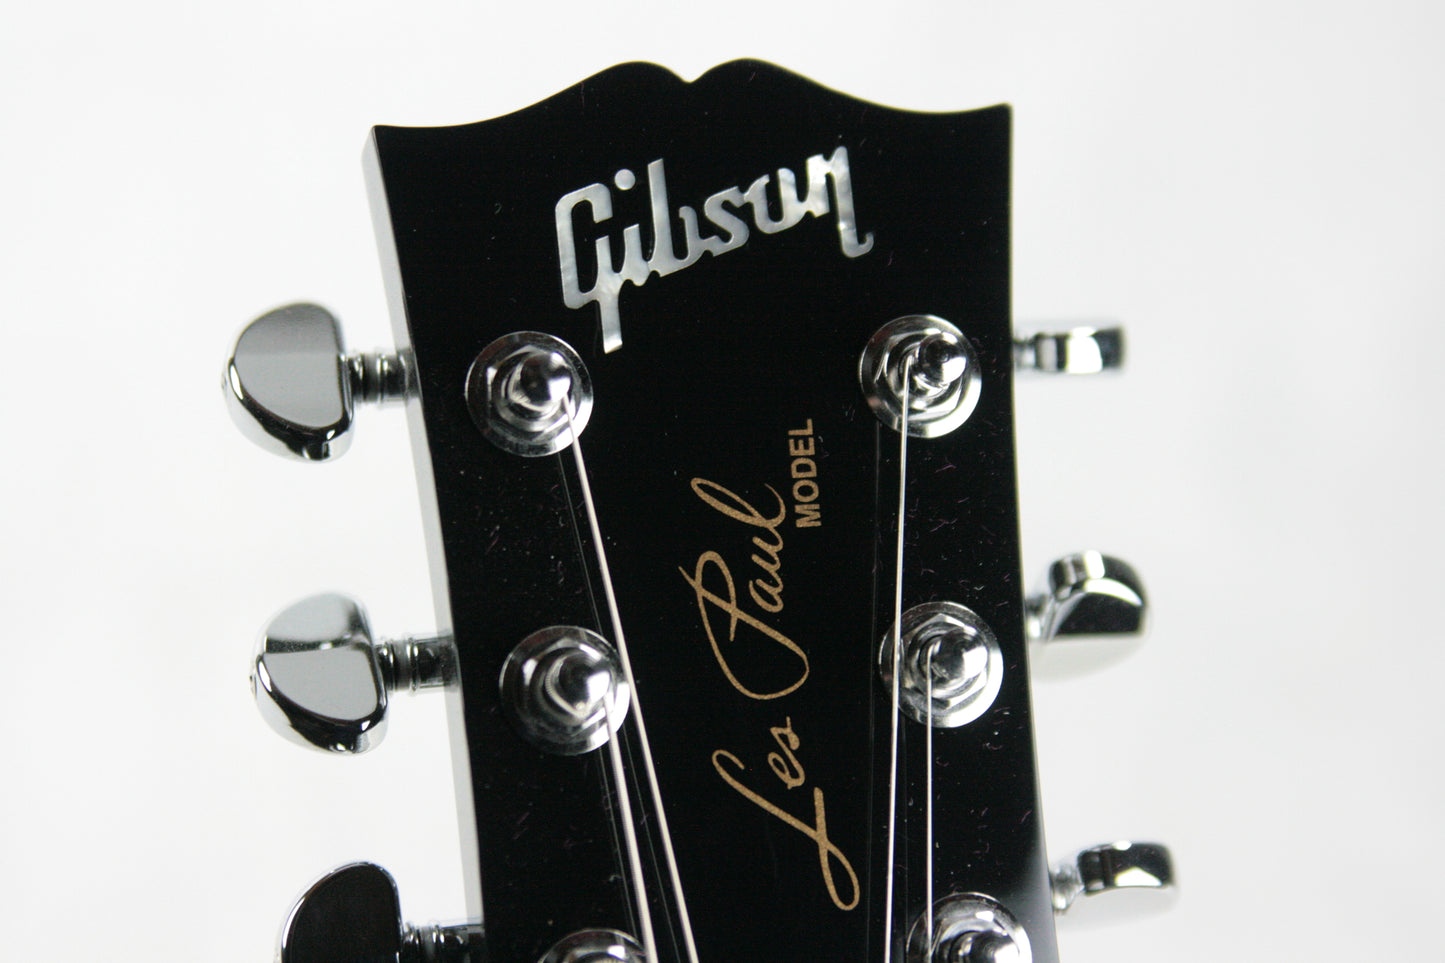 2017 Gibson Custom Shop Modern Les Paul Axcess Standard Floyd Rose Gun Metal Gray